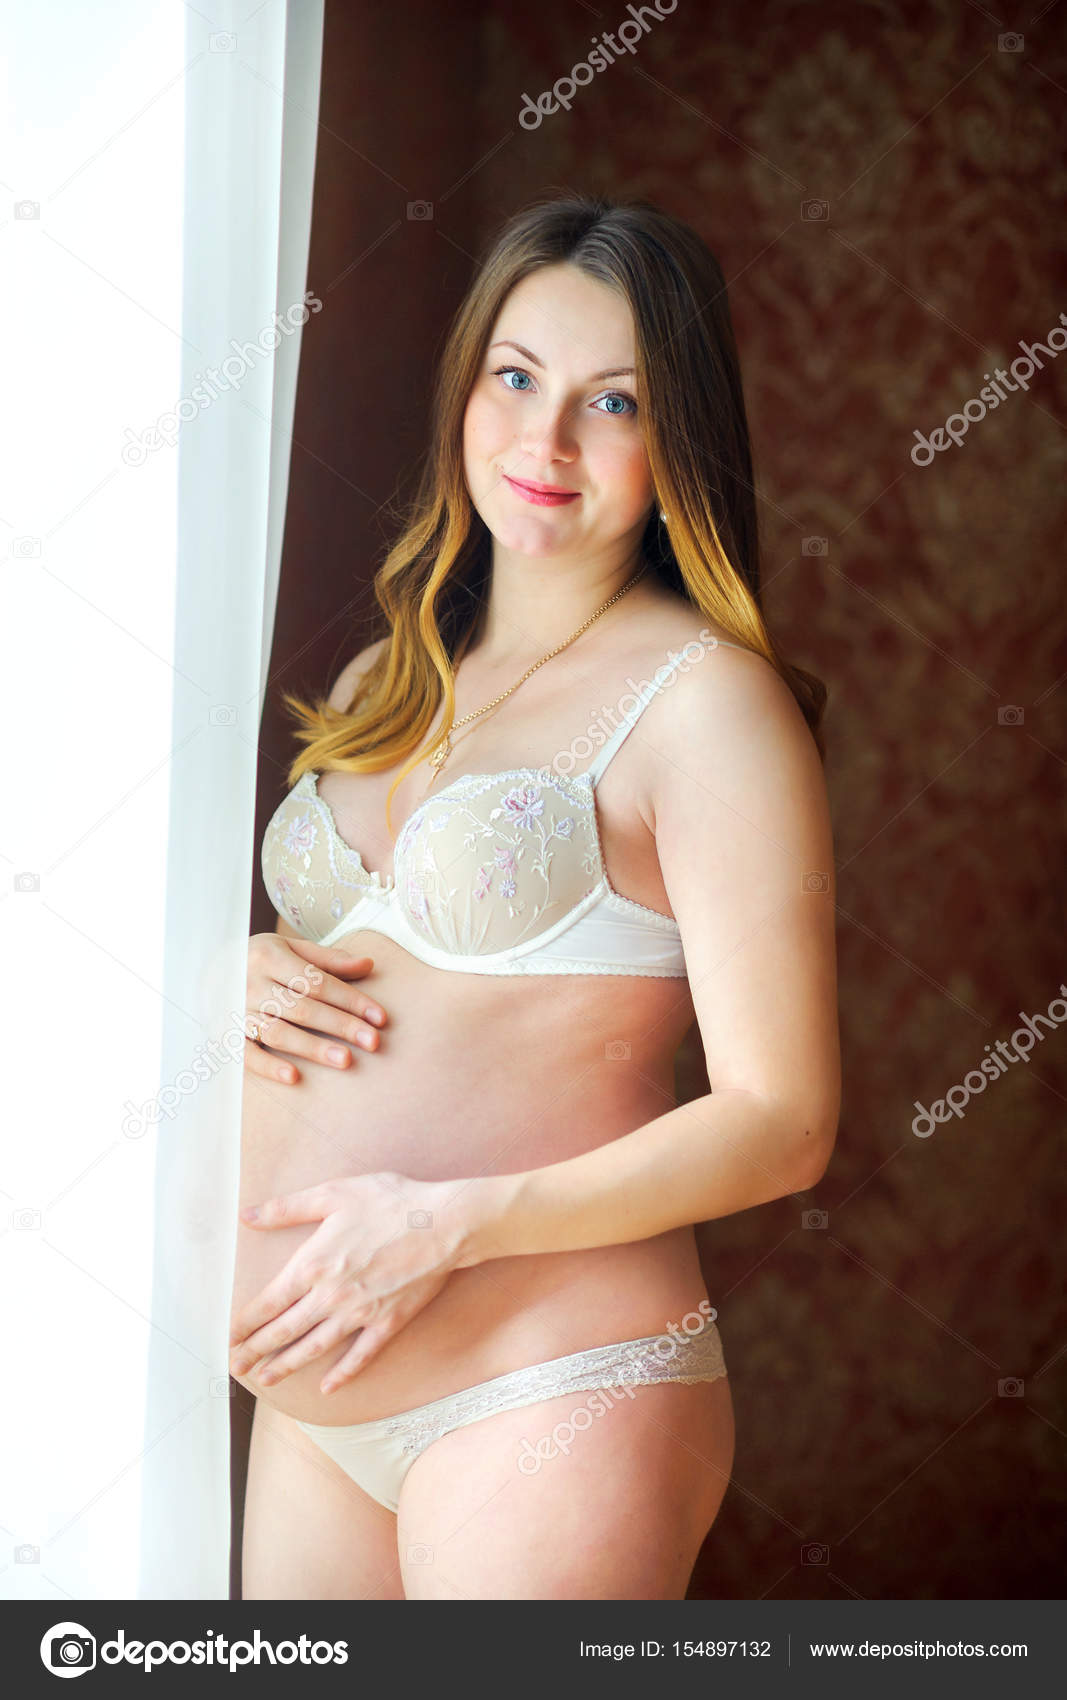 Gorgeous naked pregnant women - XXX photo